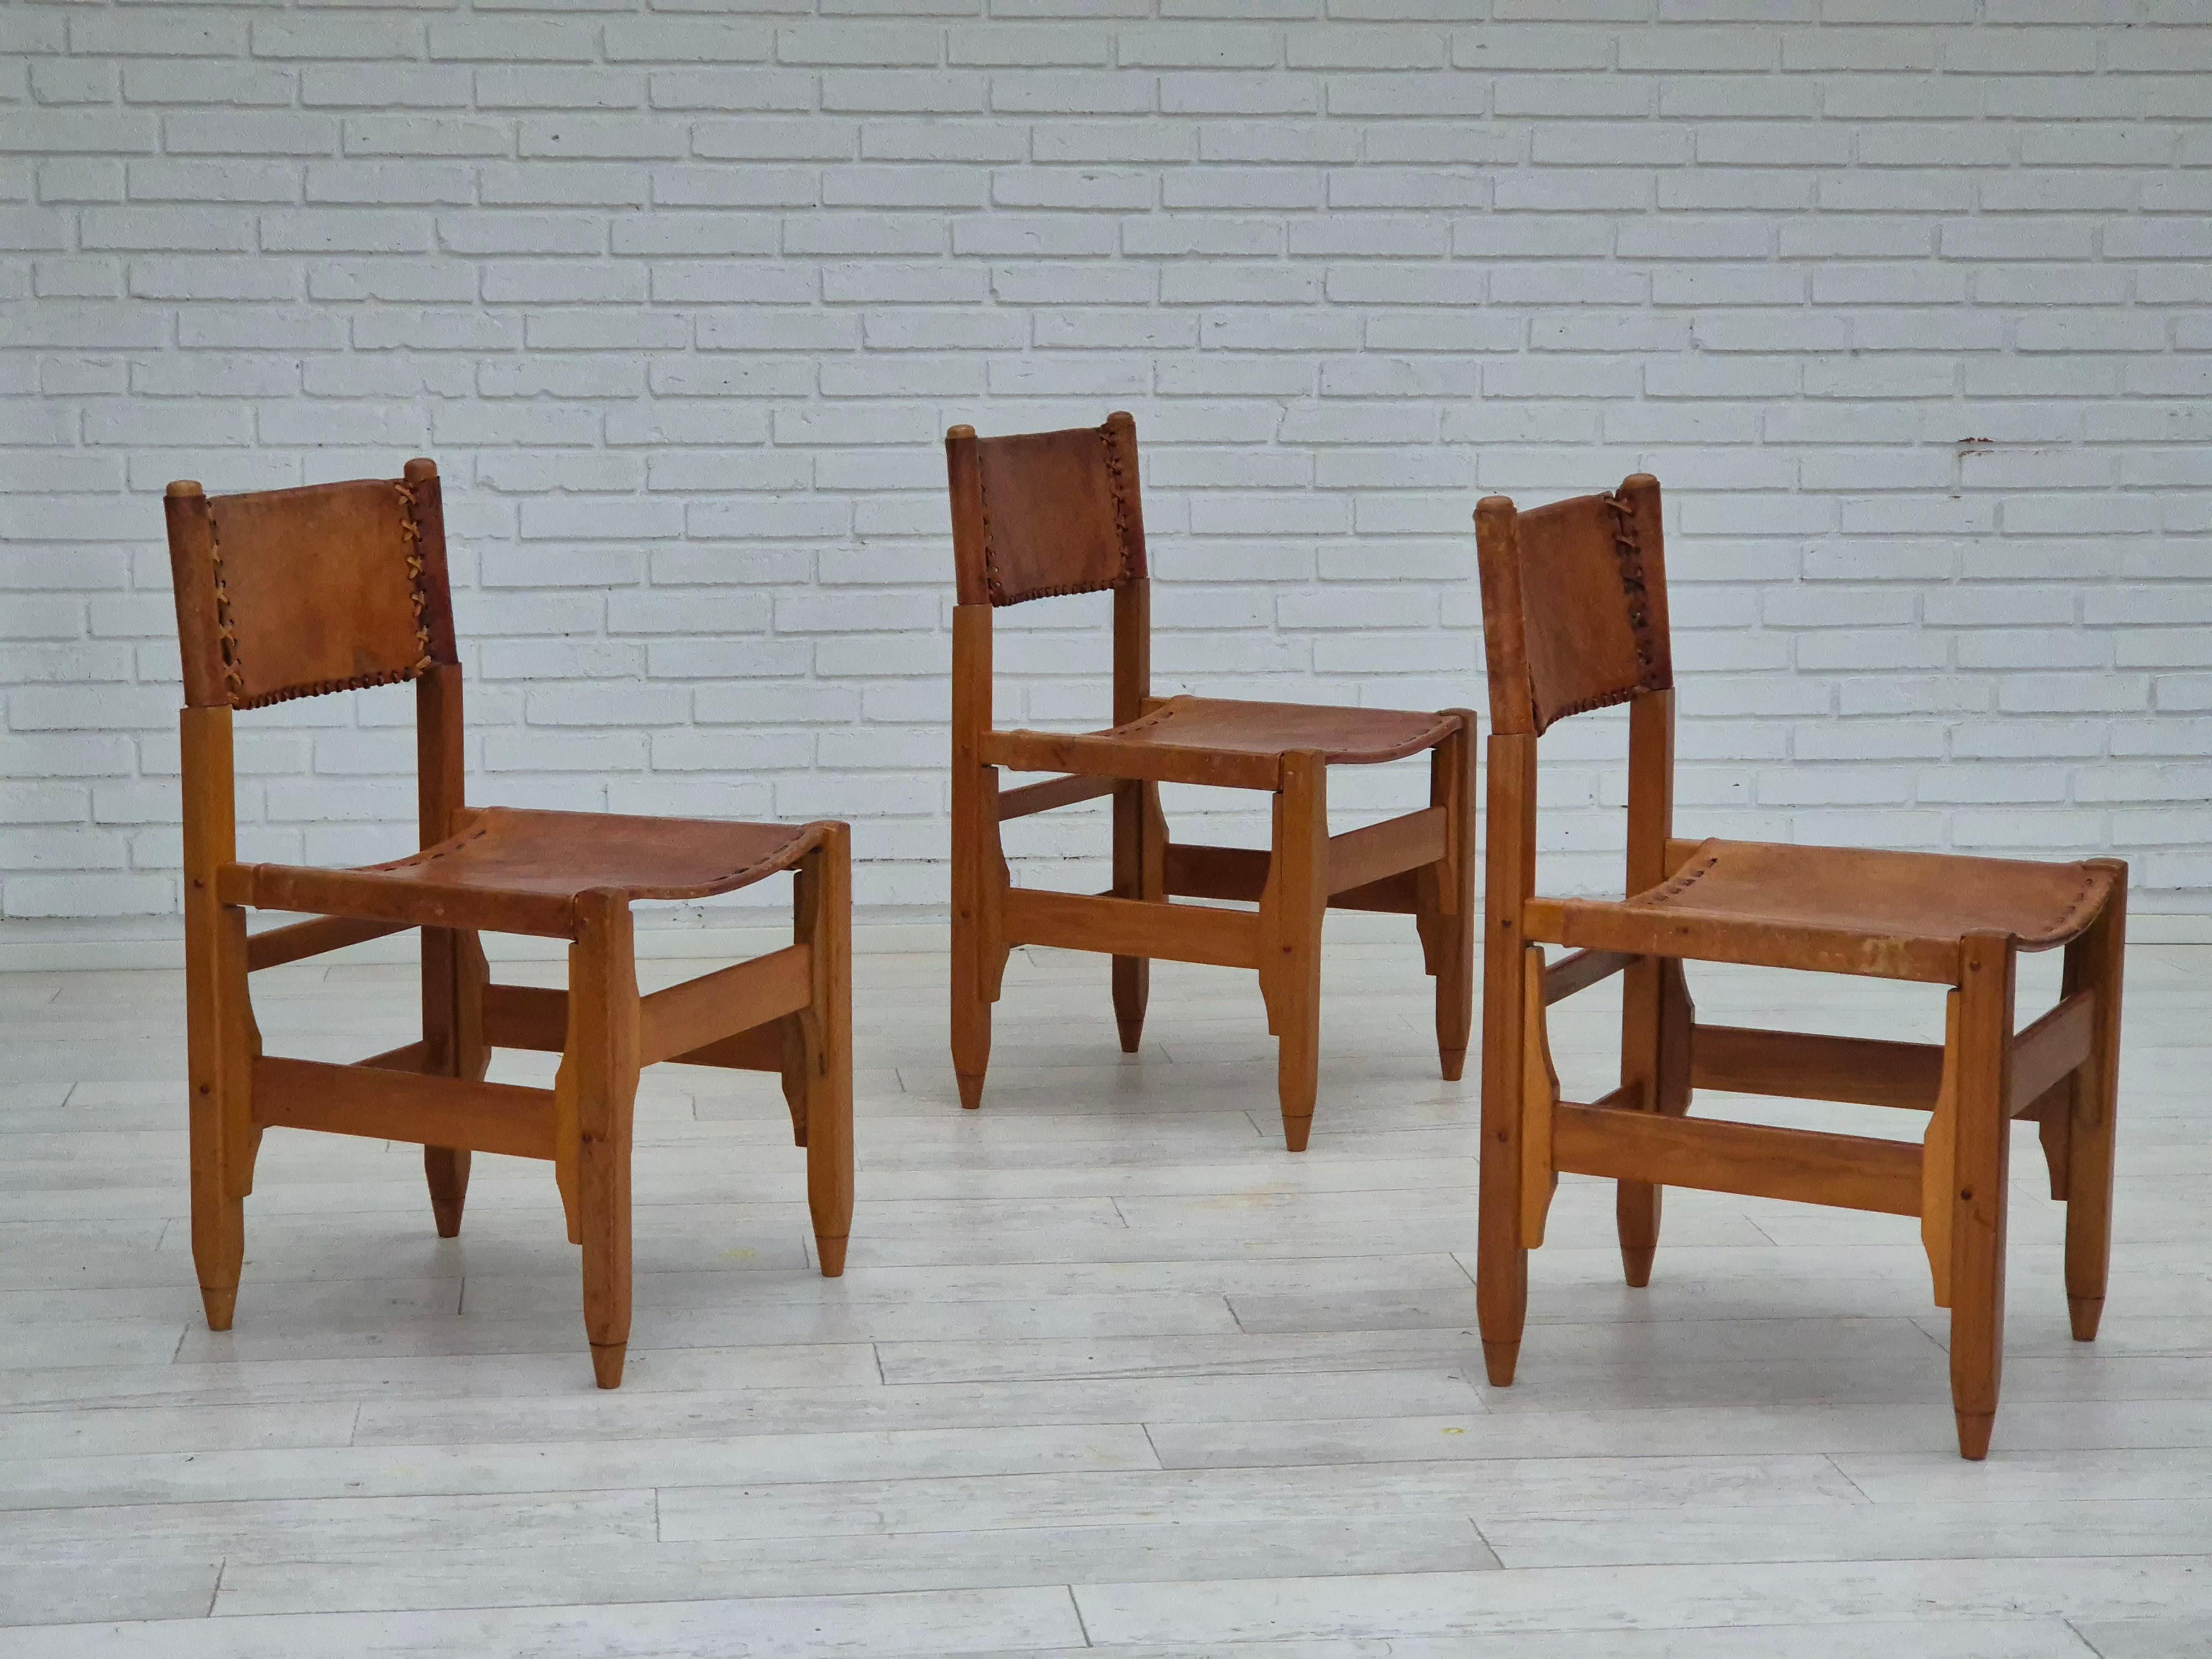 Années 1960, design de Werner Biermann pour Arte Sano. Ensemble de trois chaises en bon état d'origine. Cuir tanné à la main avec une très belle patine. Cuir, bois de chêne colombien. Fabriqué dans les années 1960.